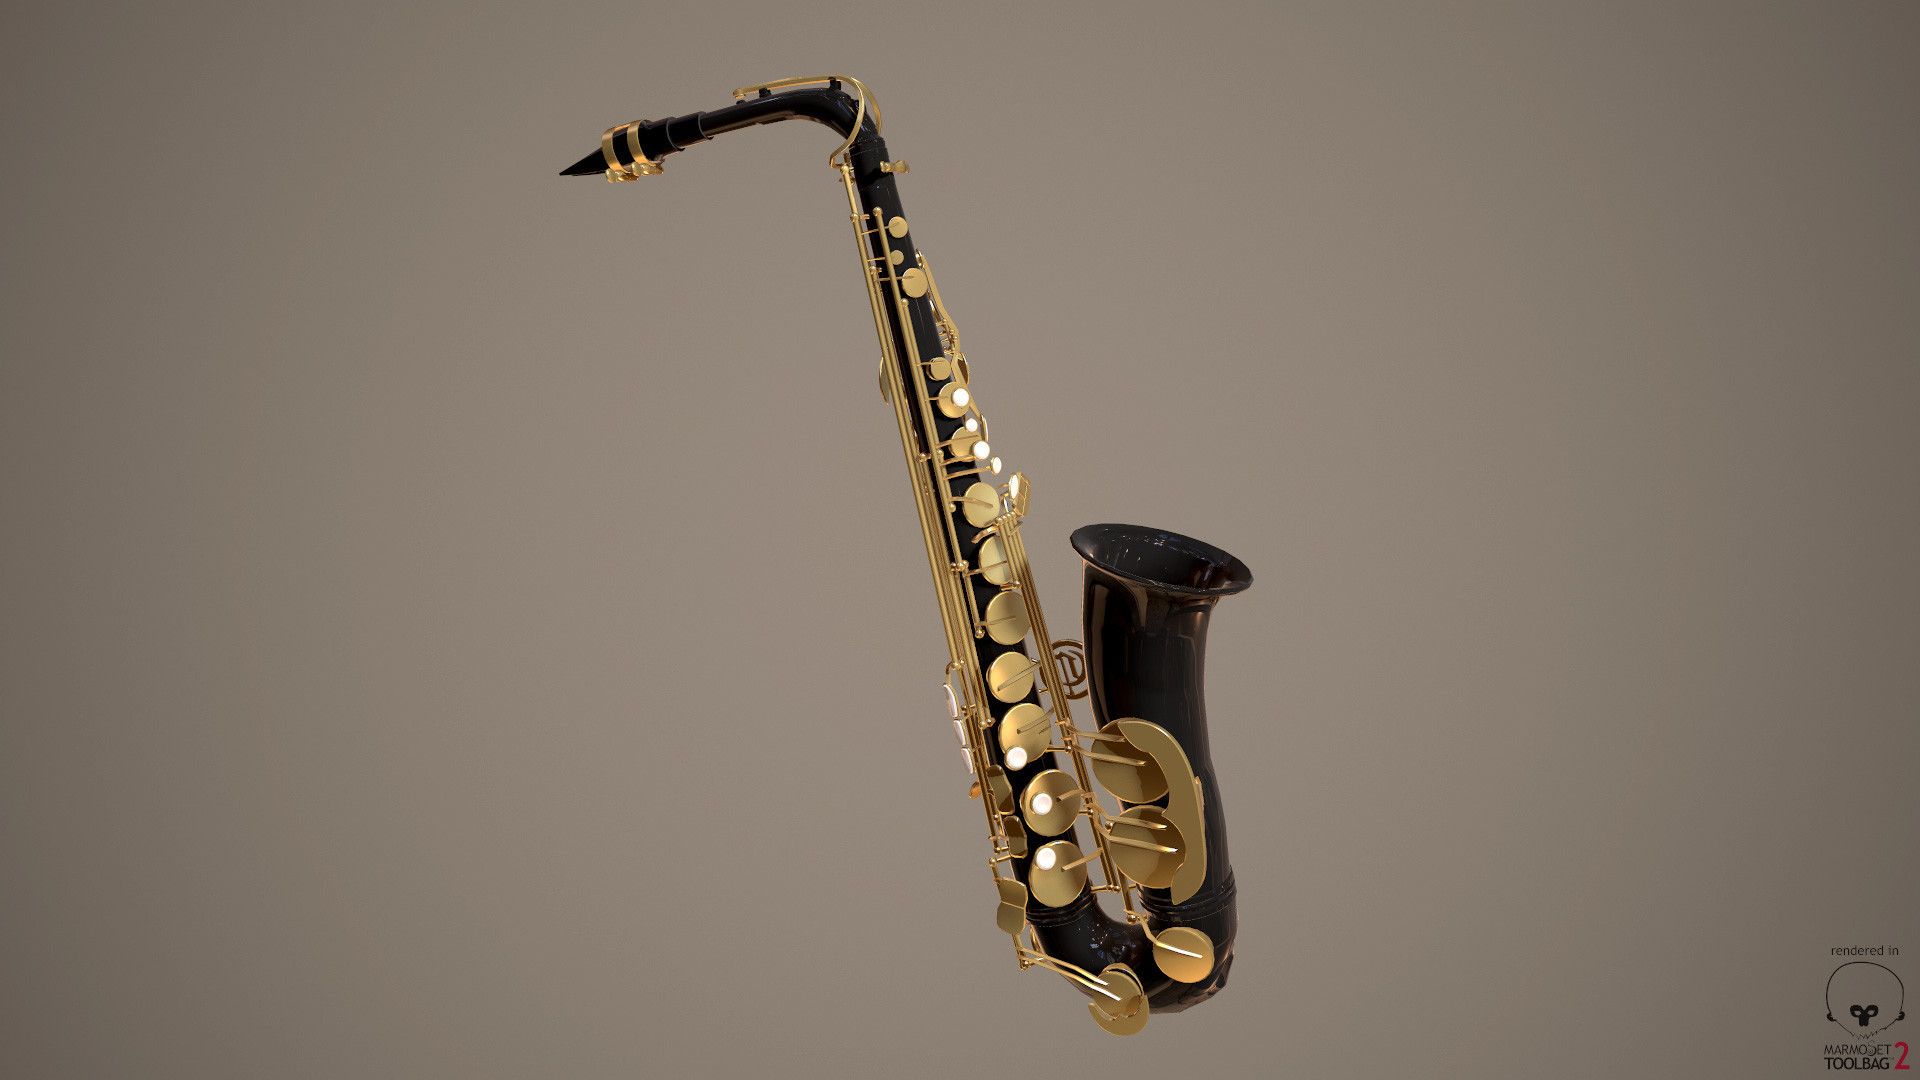 Fondos de saxofón (más de 66 imágenes de fondo)